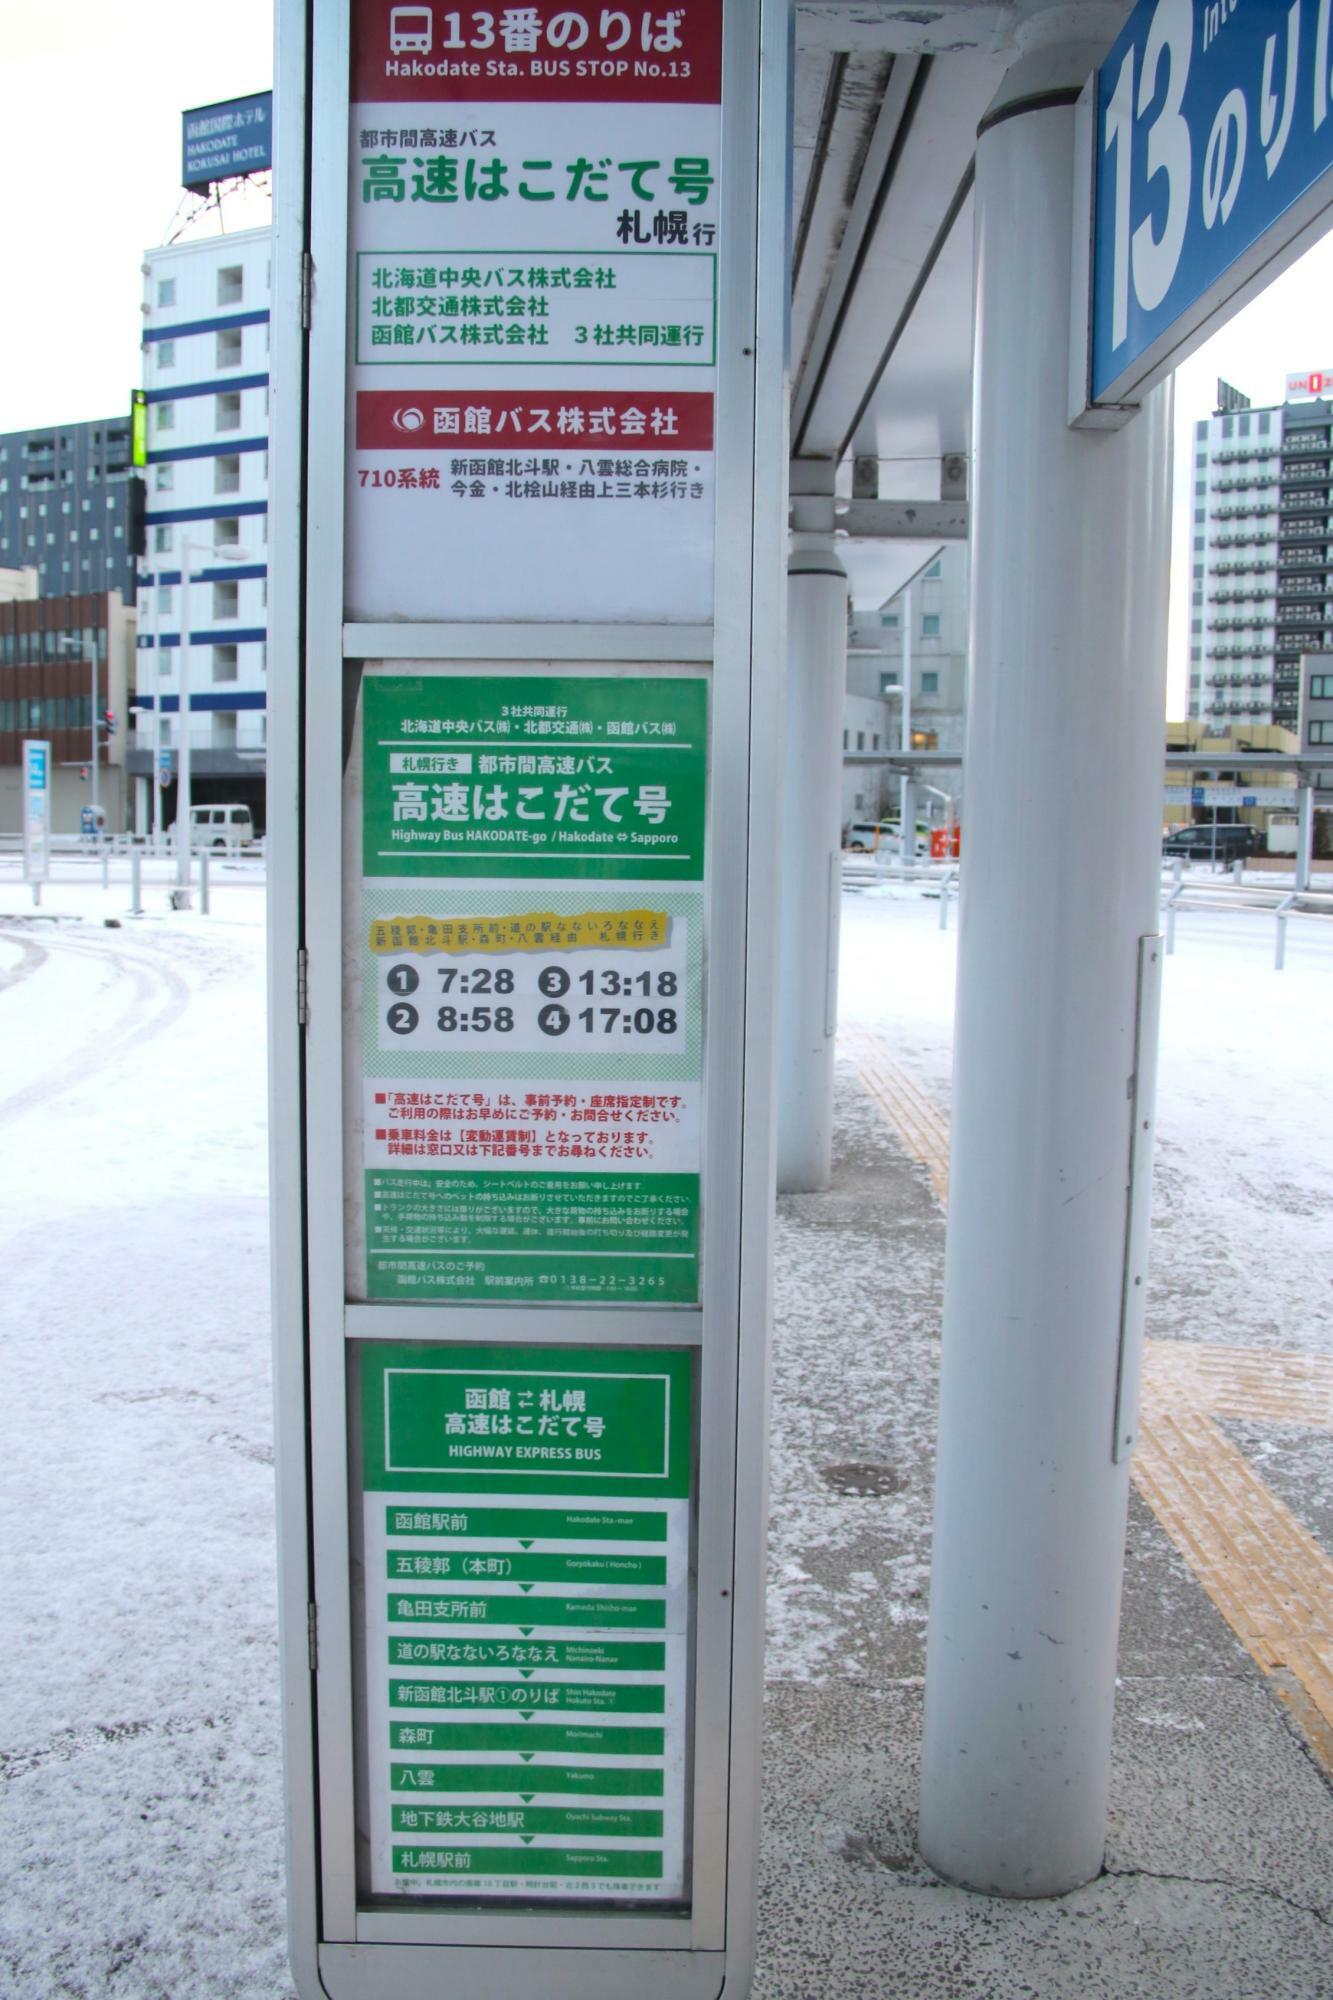 函館駅前乗車・降車のバス停は13番のりば